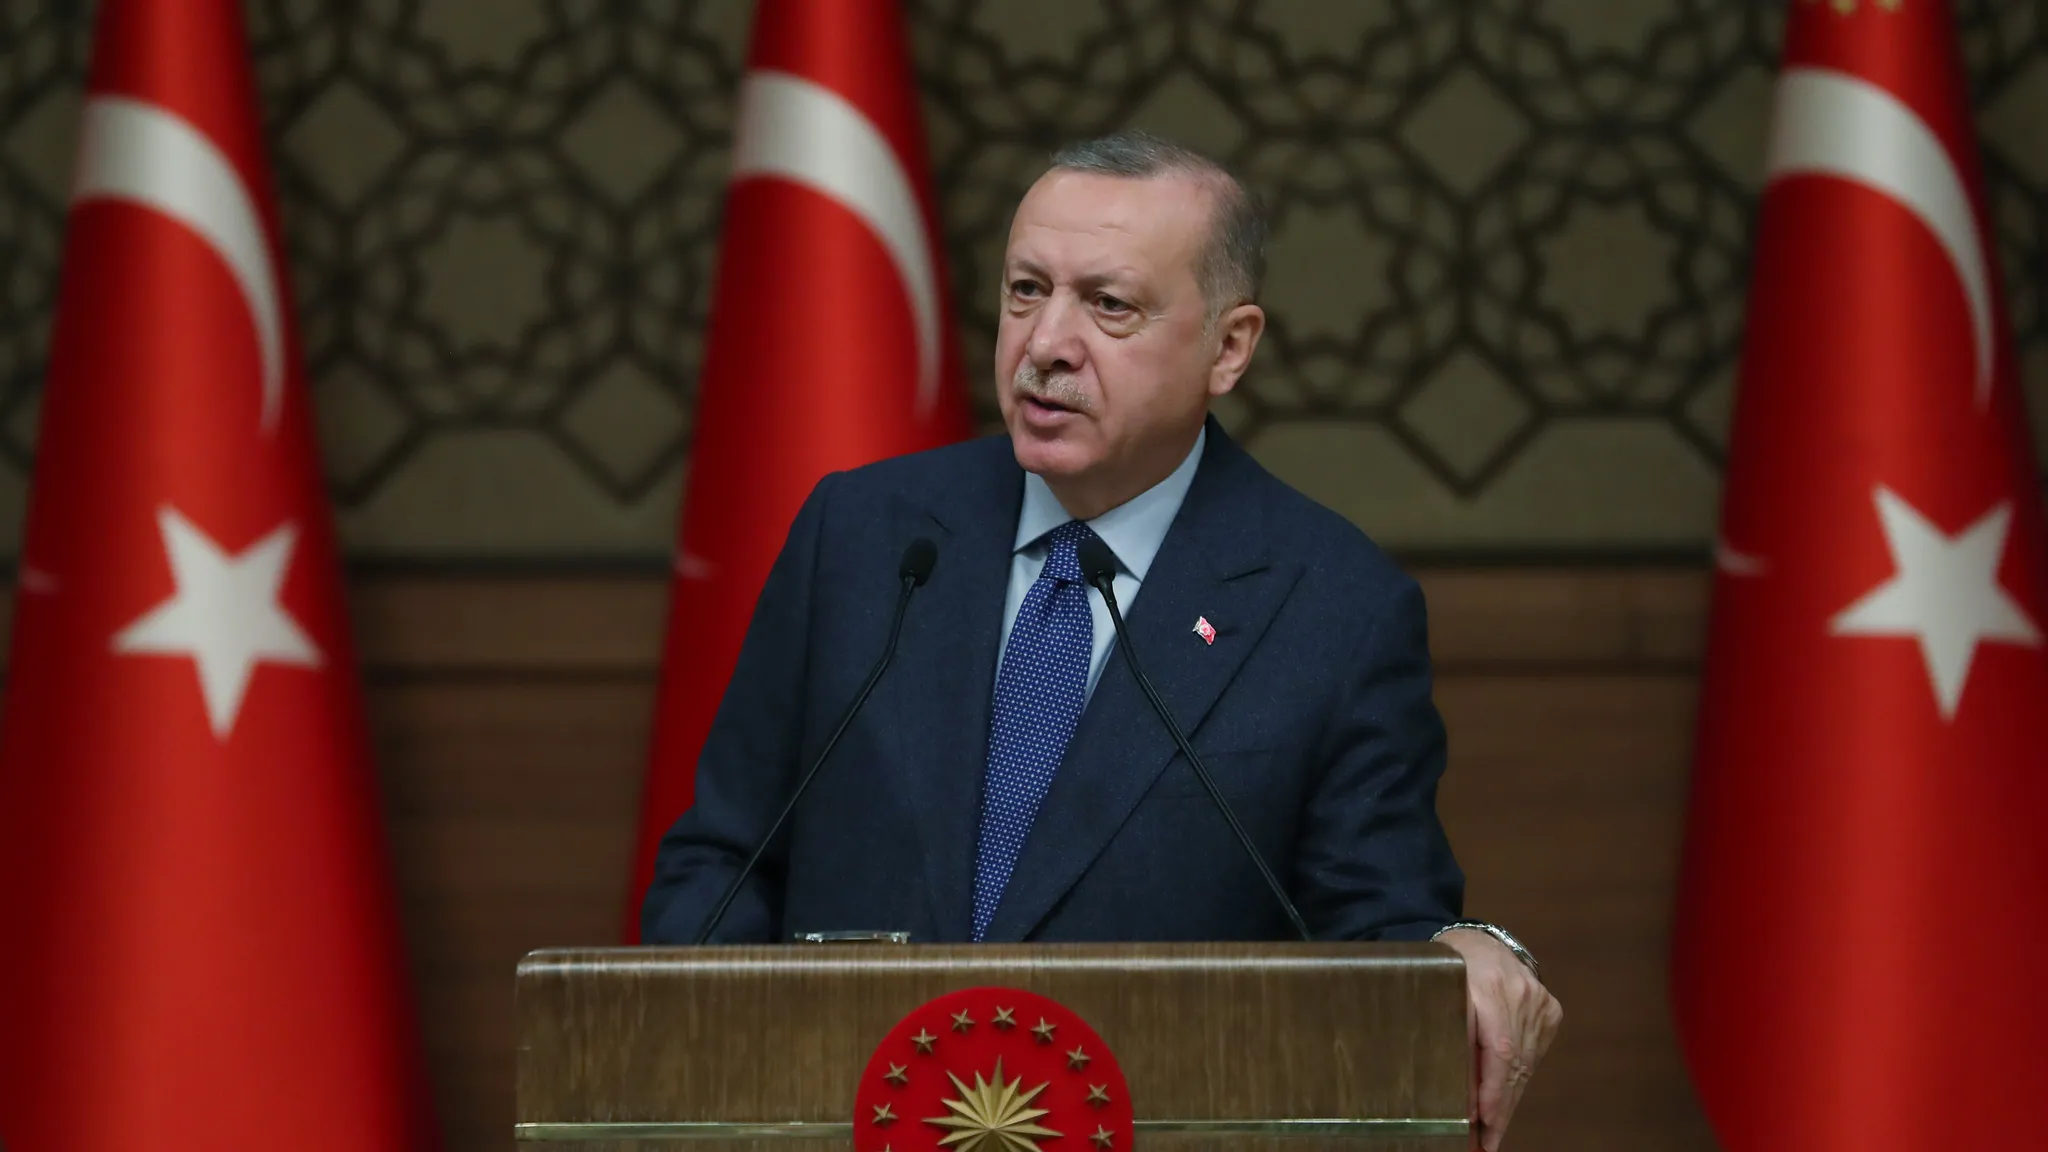 
											
											Qur’onning yoqib yuborilishi ortidan Erdog‘an Shvetsiyani NATOga kiritmaslikni talab qilmoqda
											
											